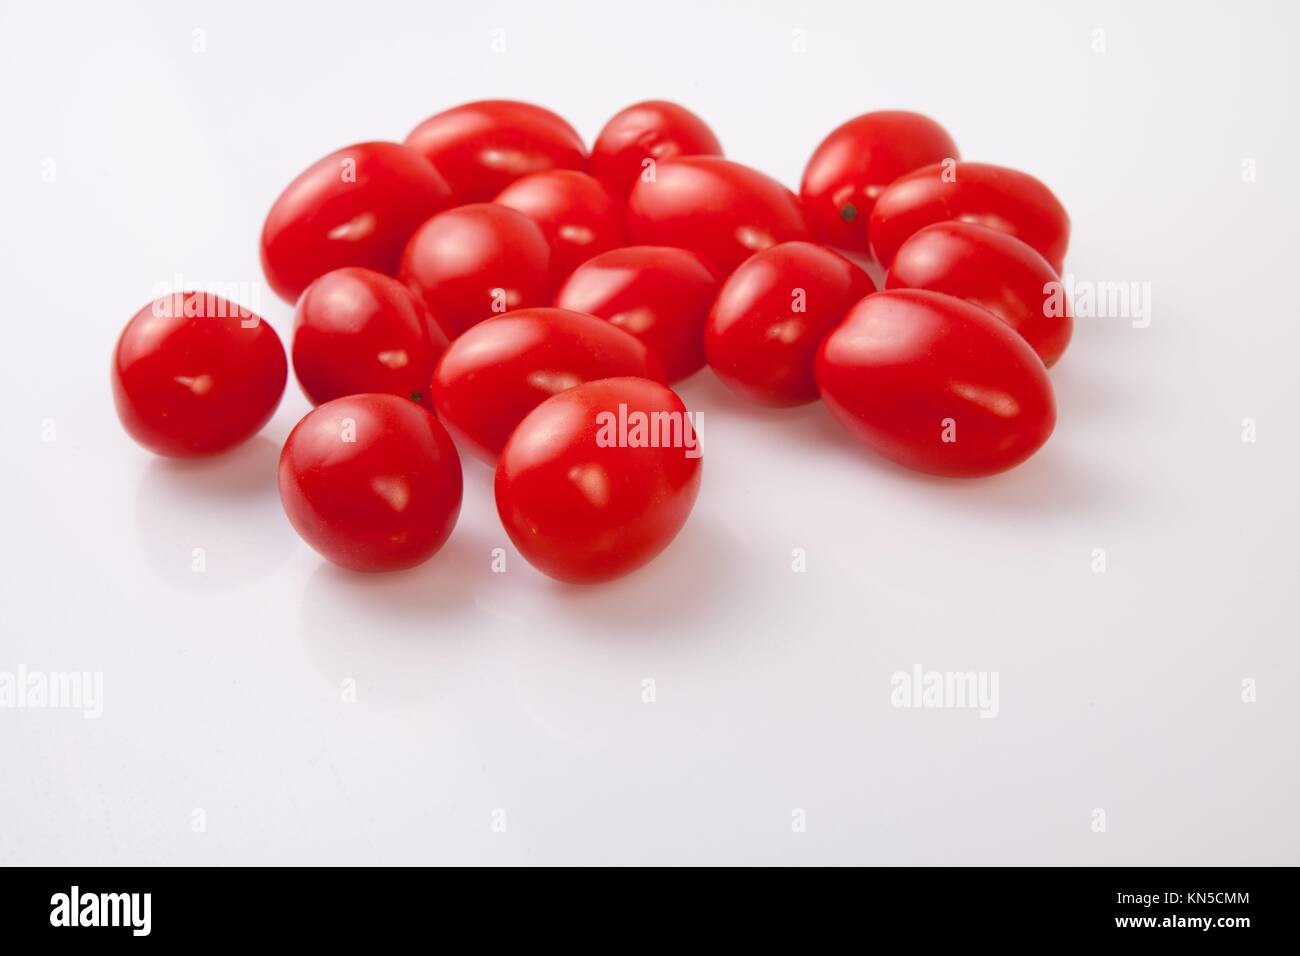 Puñado de rojo brillante de tomates cherry. Aislado sobre fondo blanco. Foto de stock